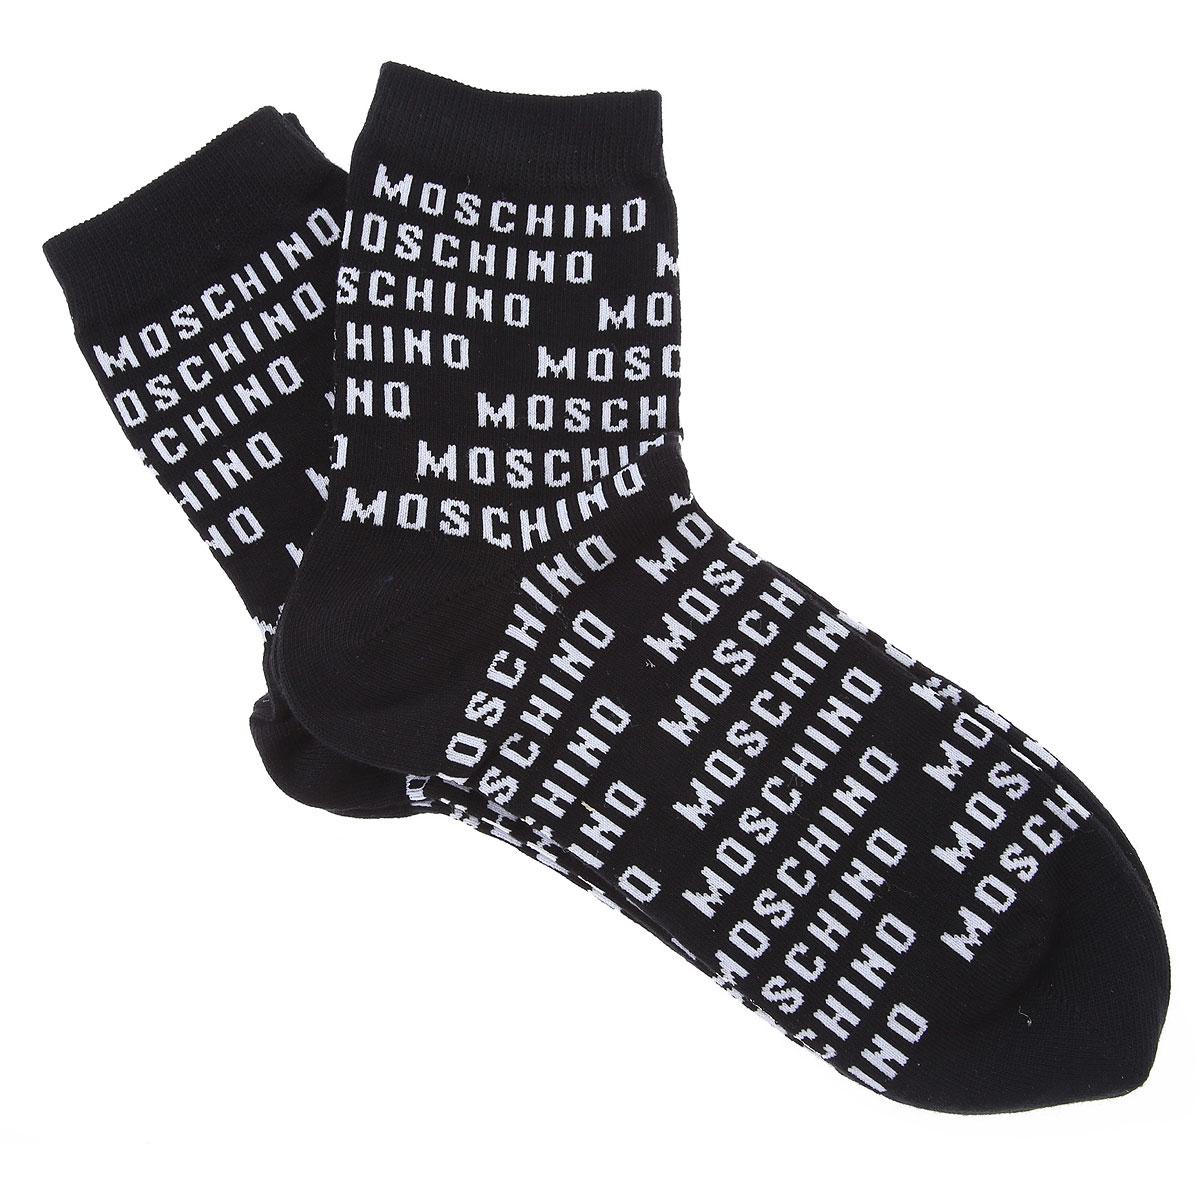 moschino socks